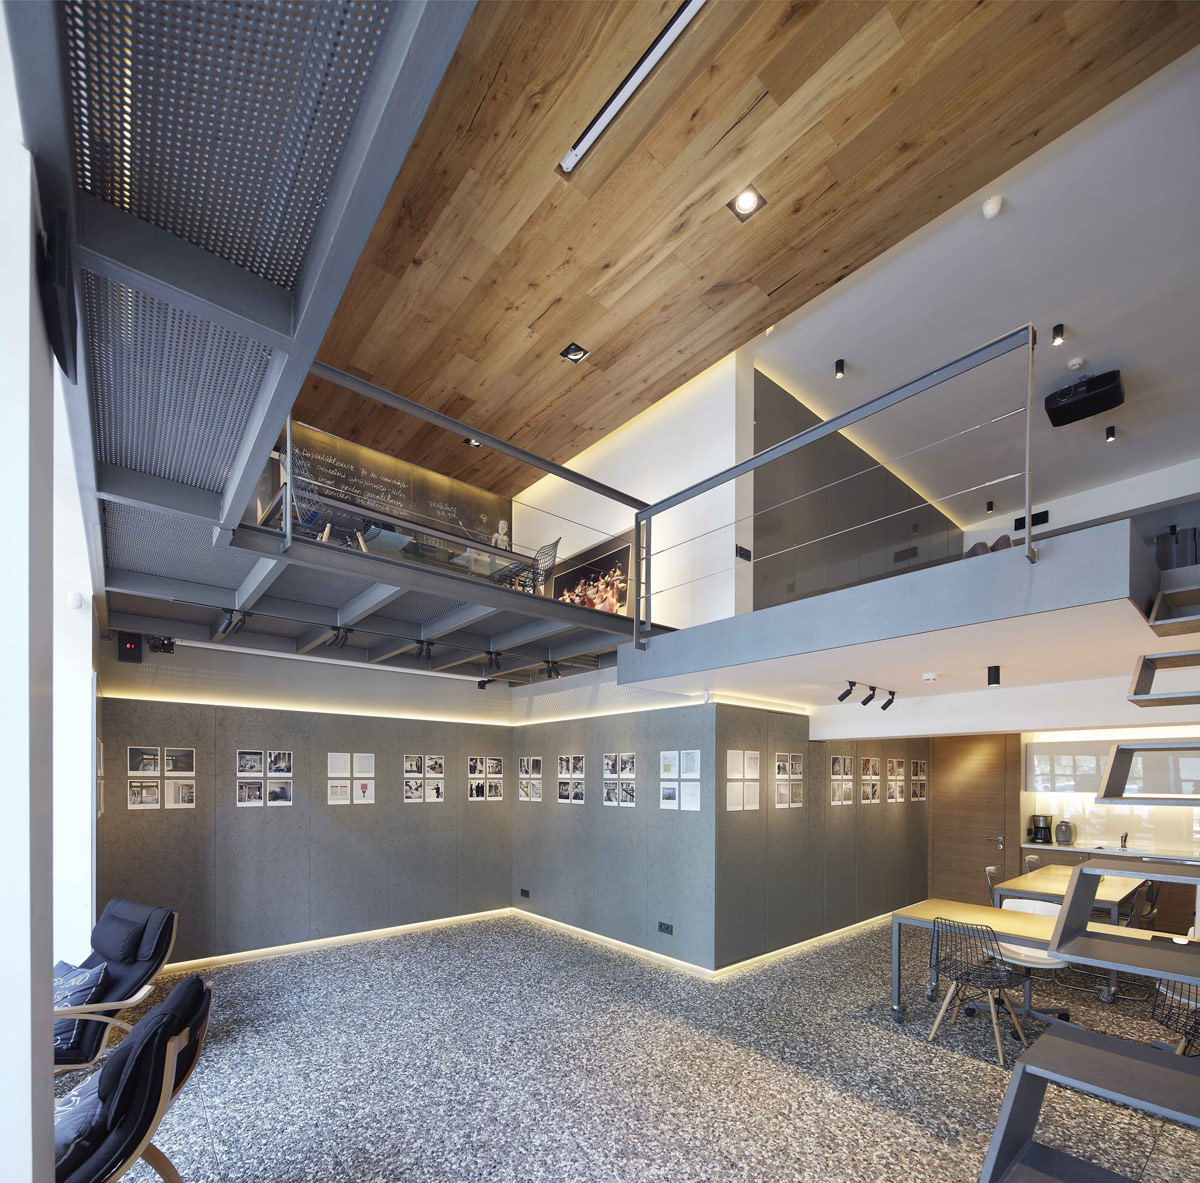 一个家和公共艺术画廊：Studio Loft摄影工作室空间设计